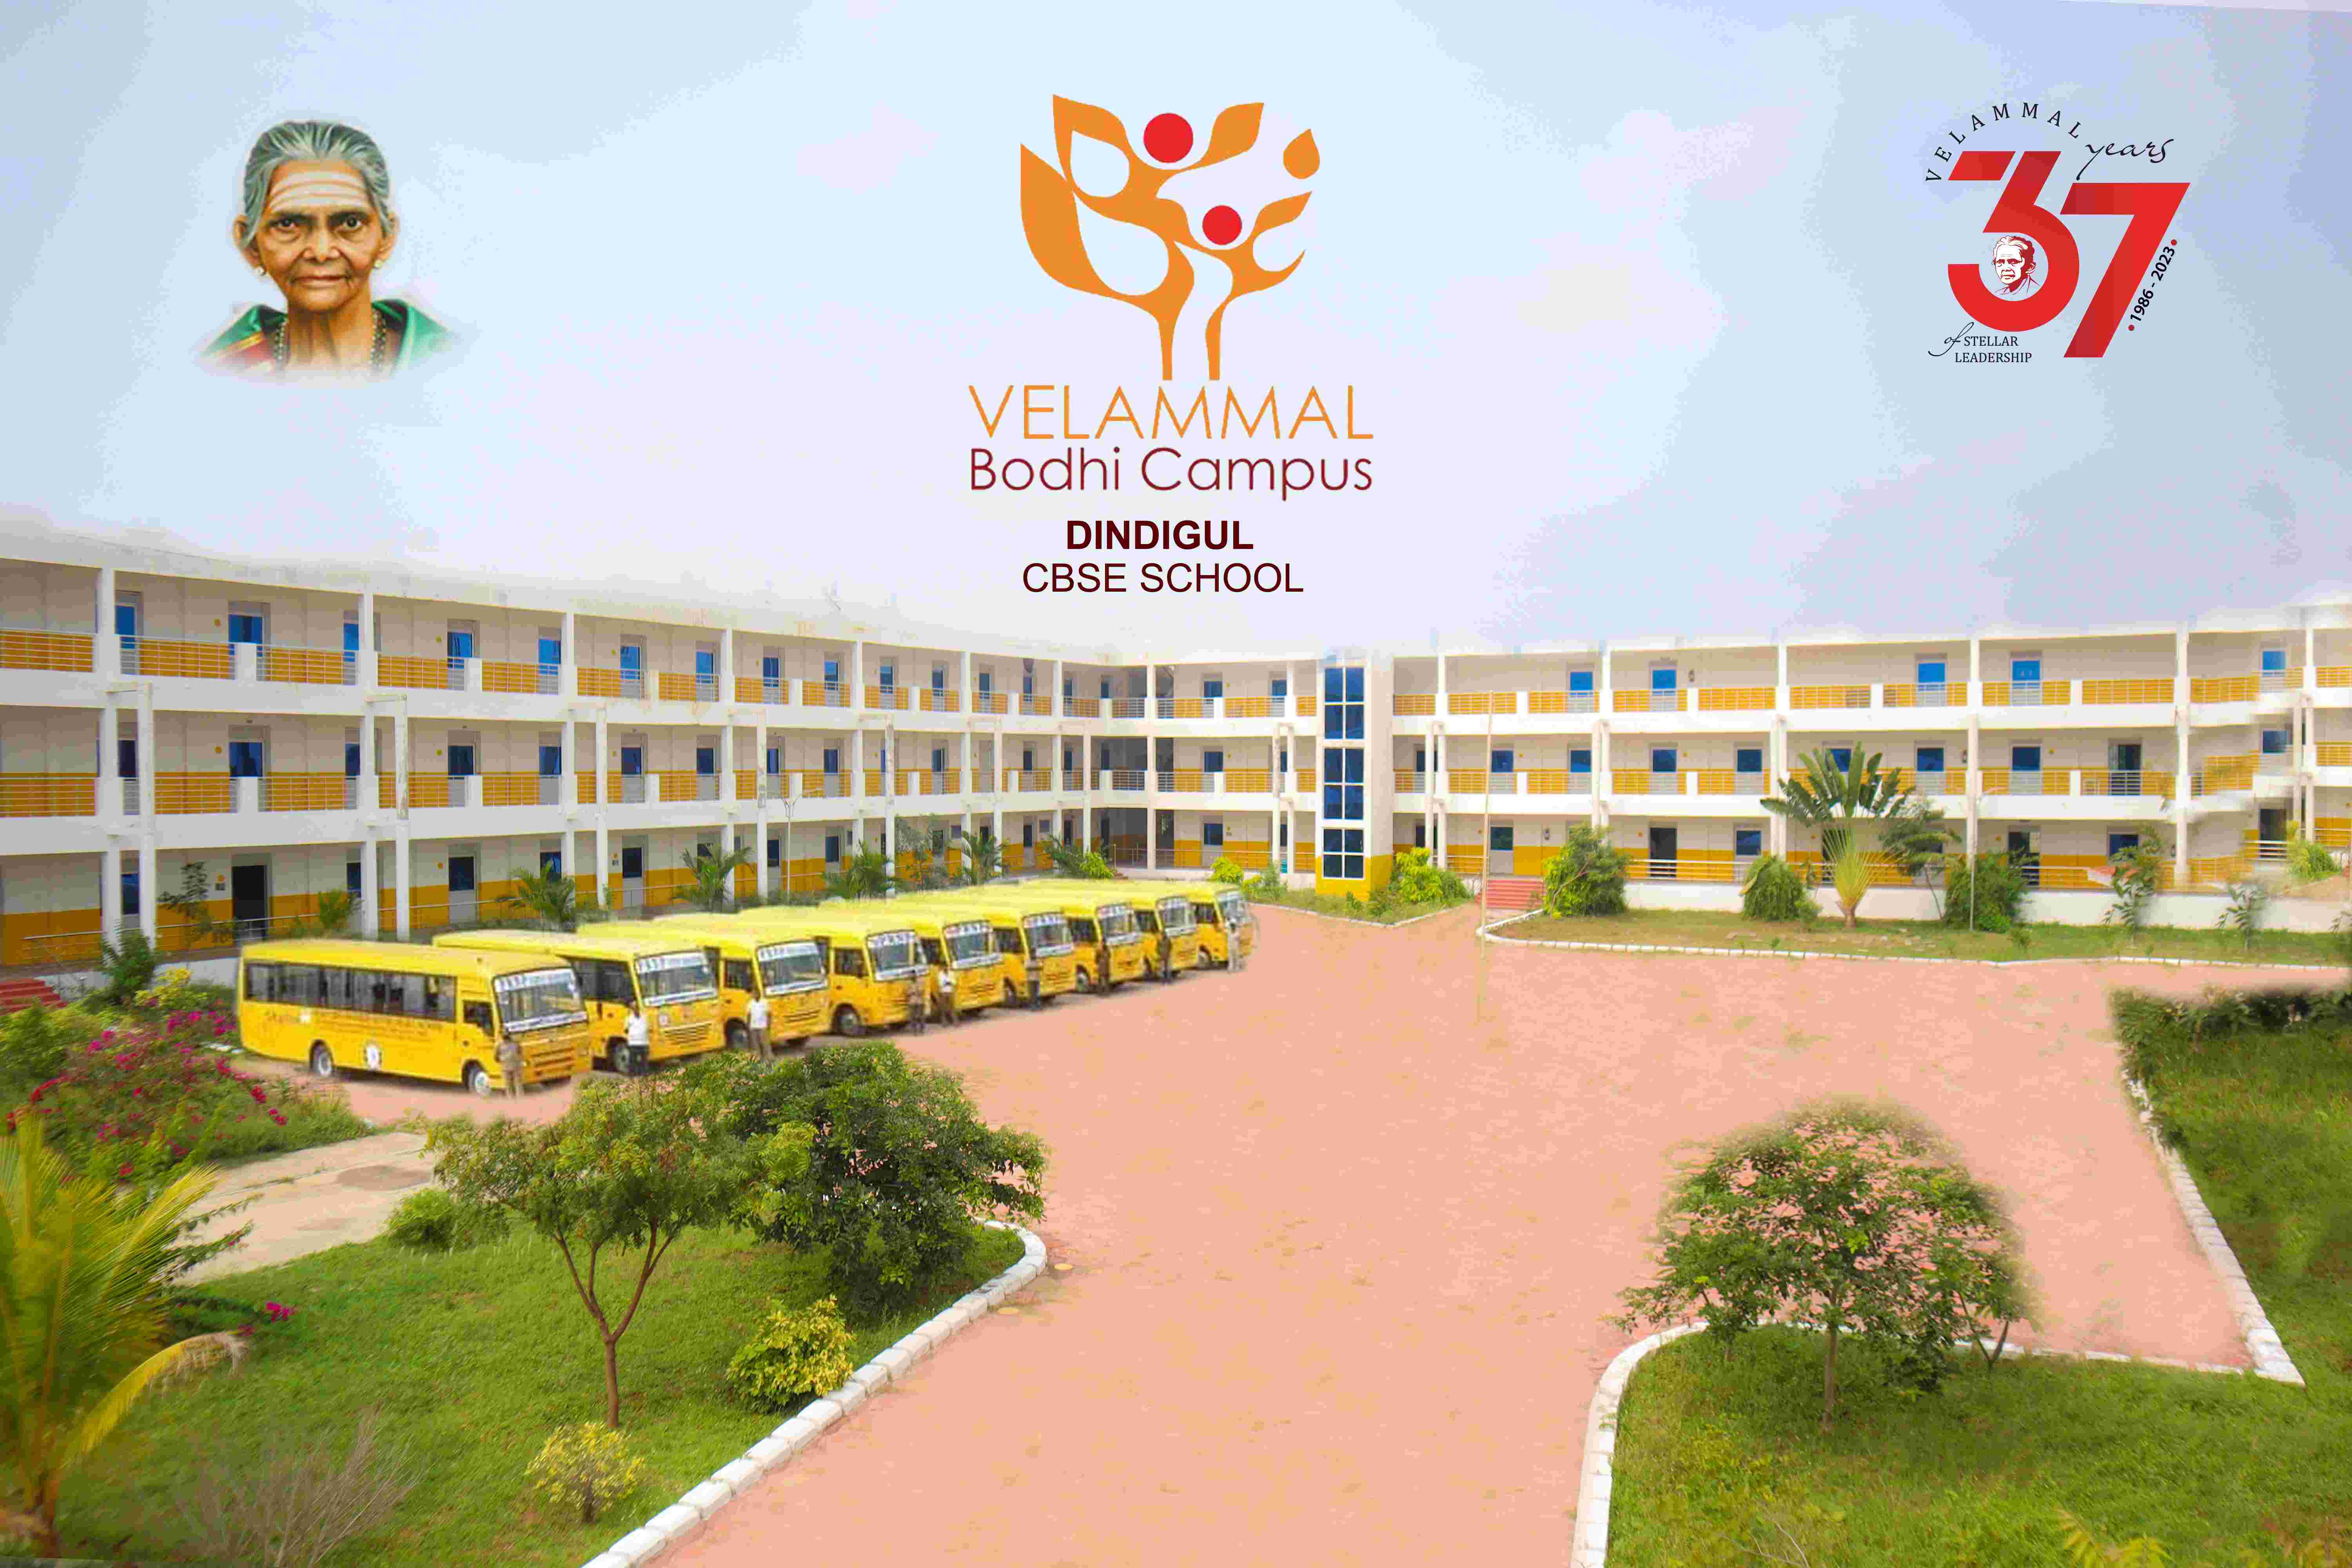 CBSE School - Velammal Bodhi Campus